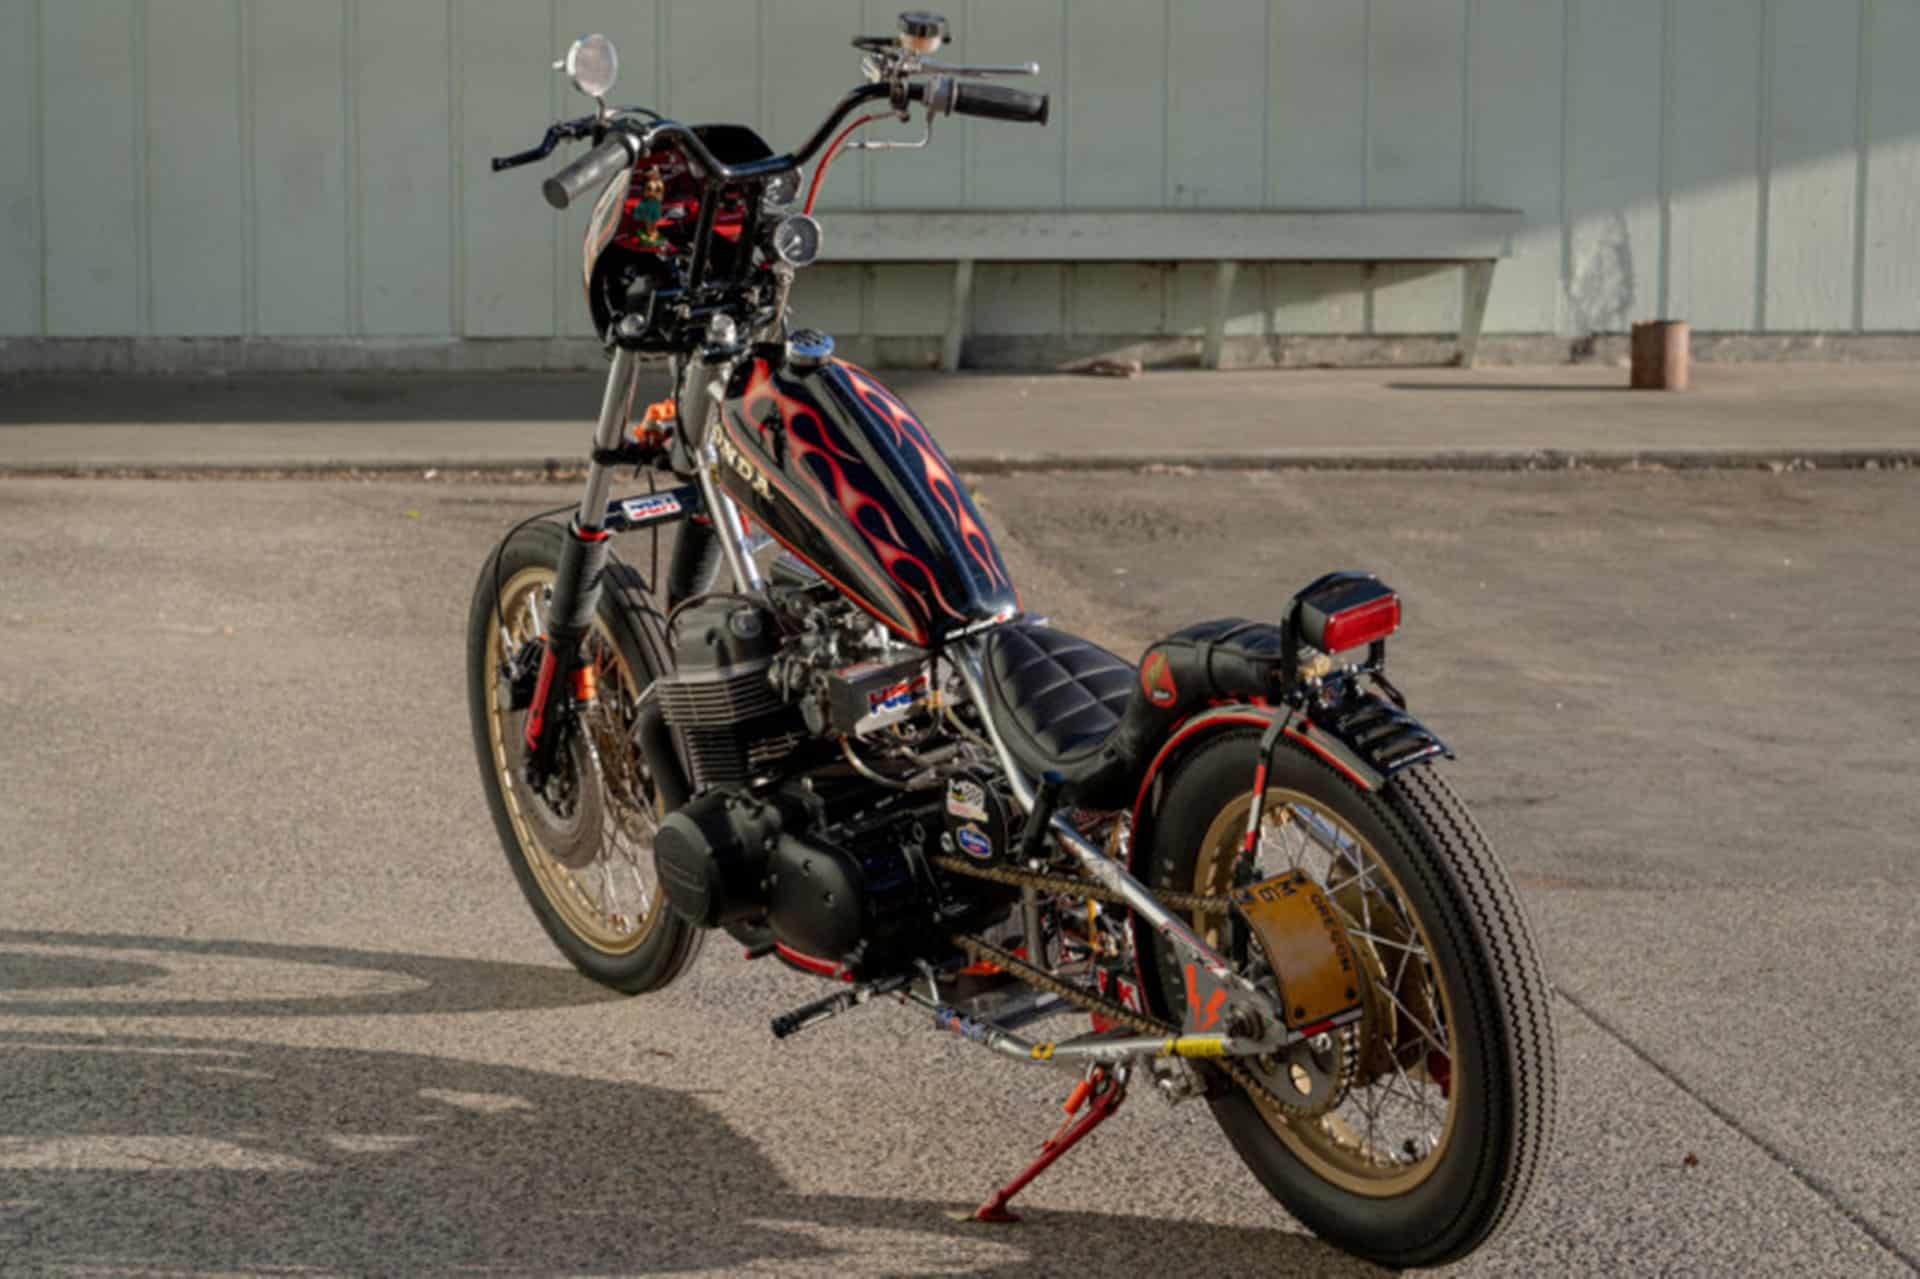 Honda CB750 “ChopRR” by JP Managa